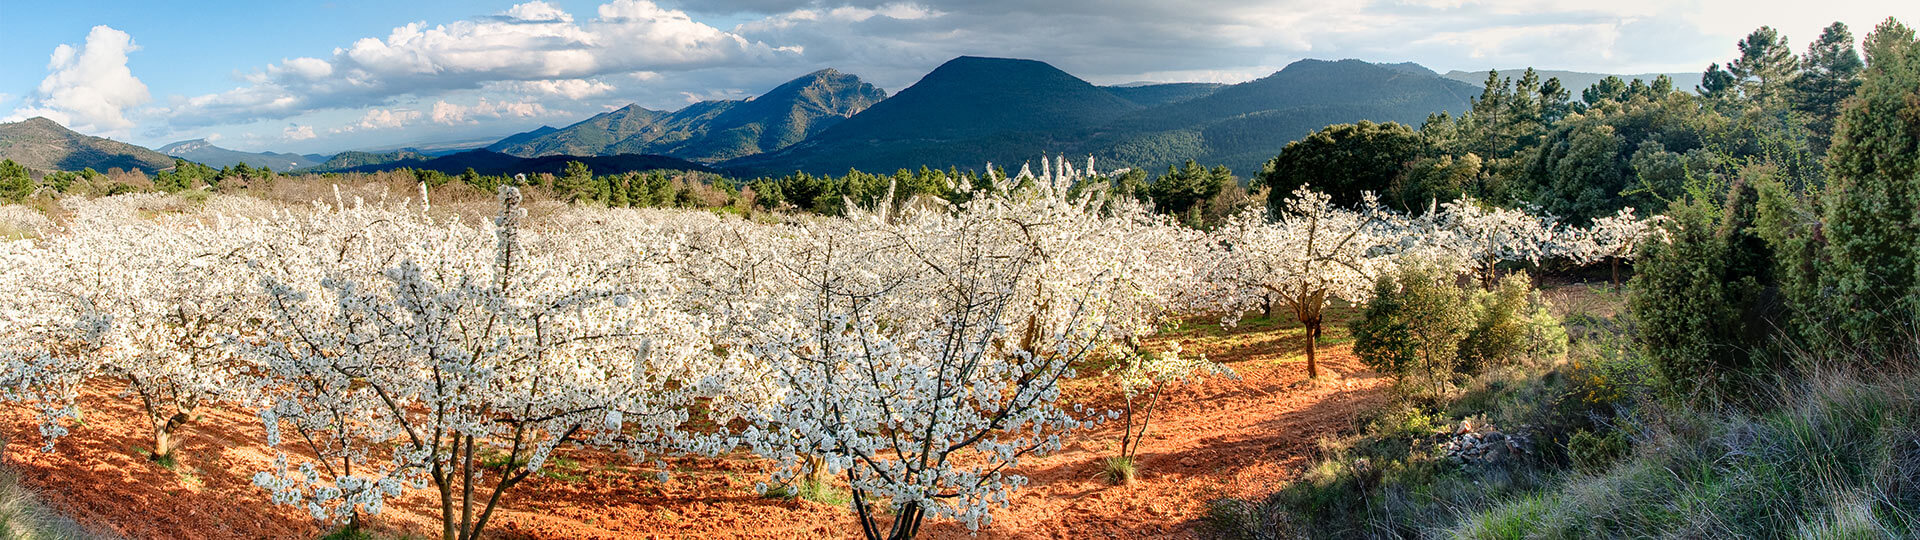  Цветущие вишневые деревья в долине Валье-дель-Херте, Эстремадура